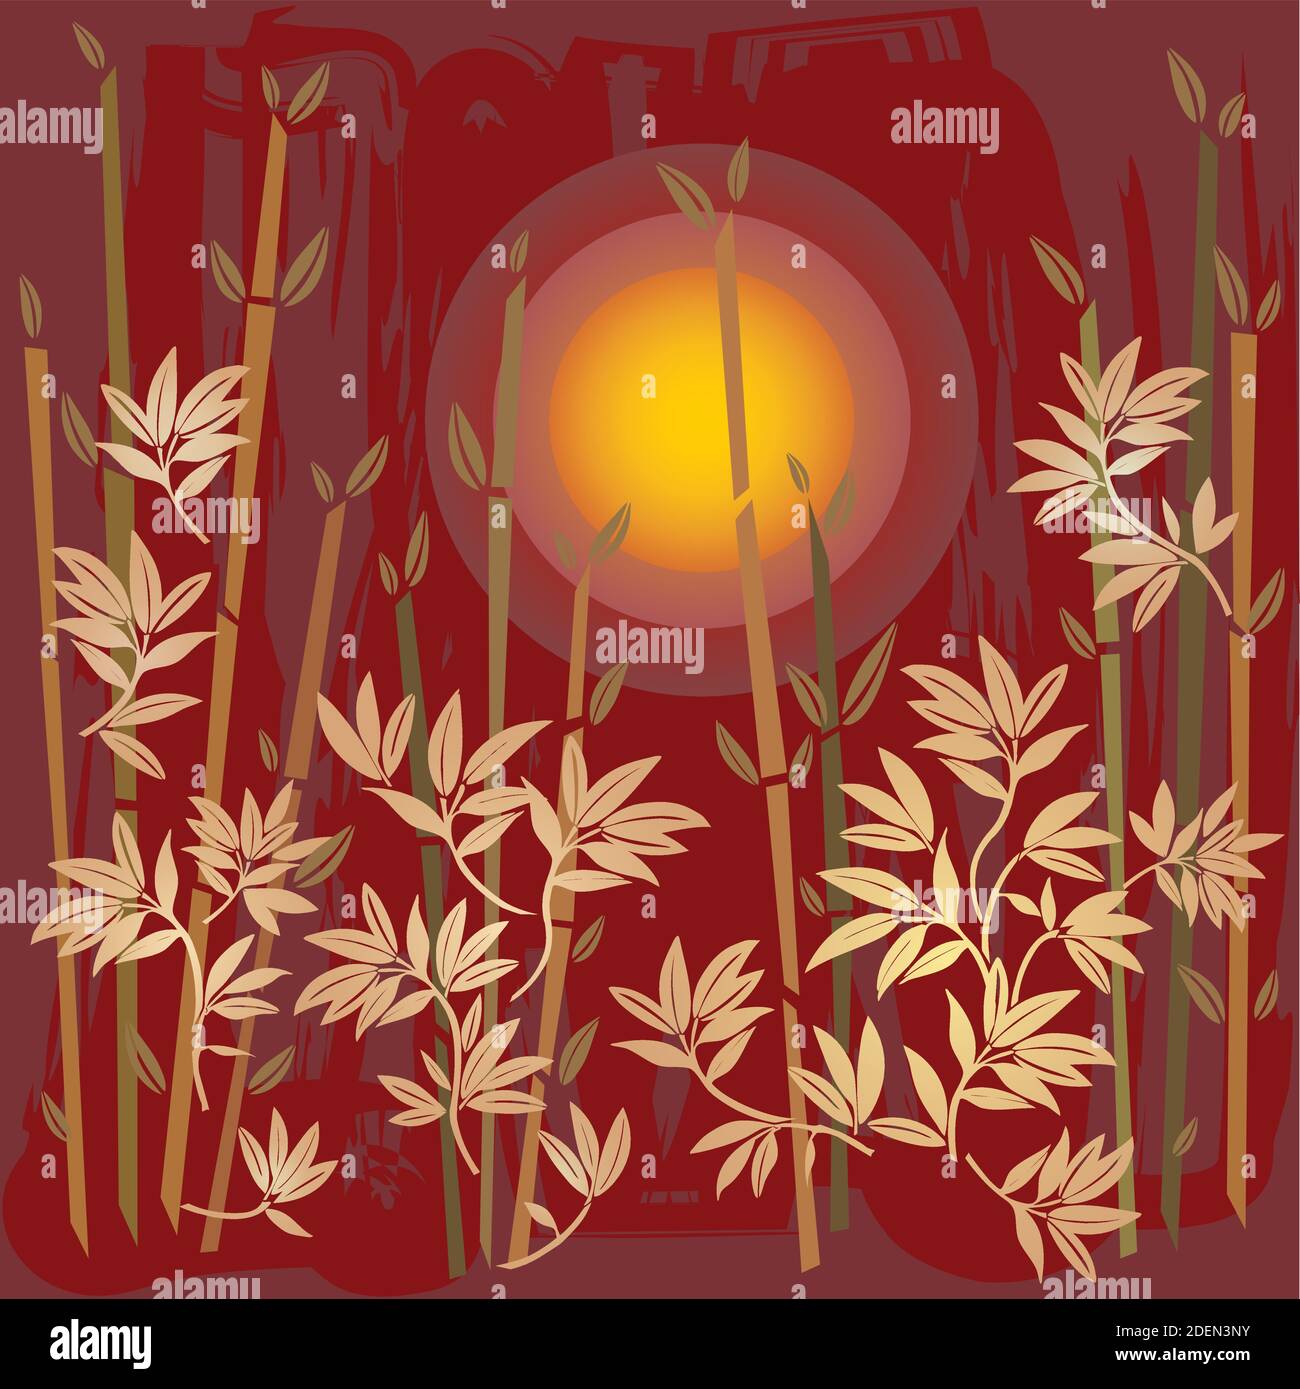 Asiatische Landschaft Sonnenuntergang Illustration mit Bamboos in Rot und Gold Farben - Garten-Design Stock Vektor